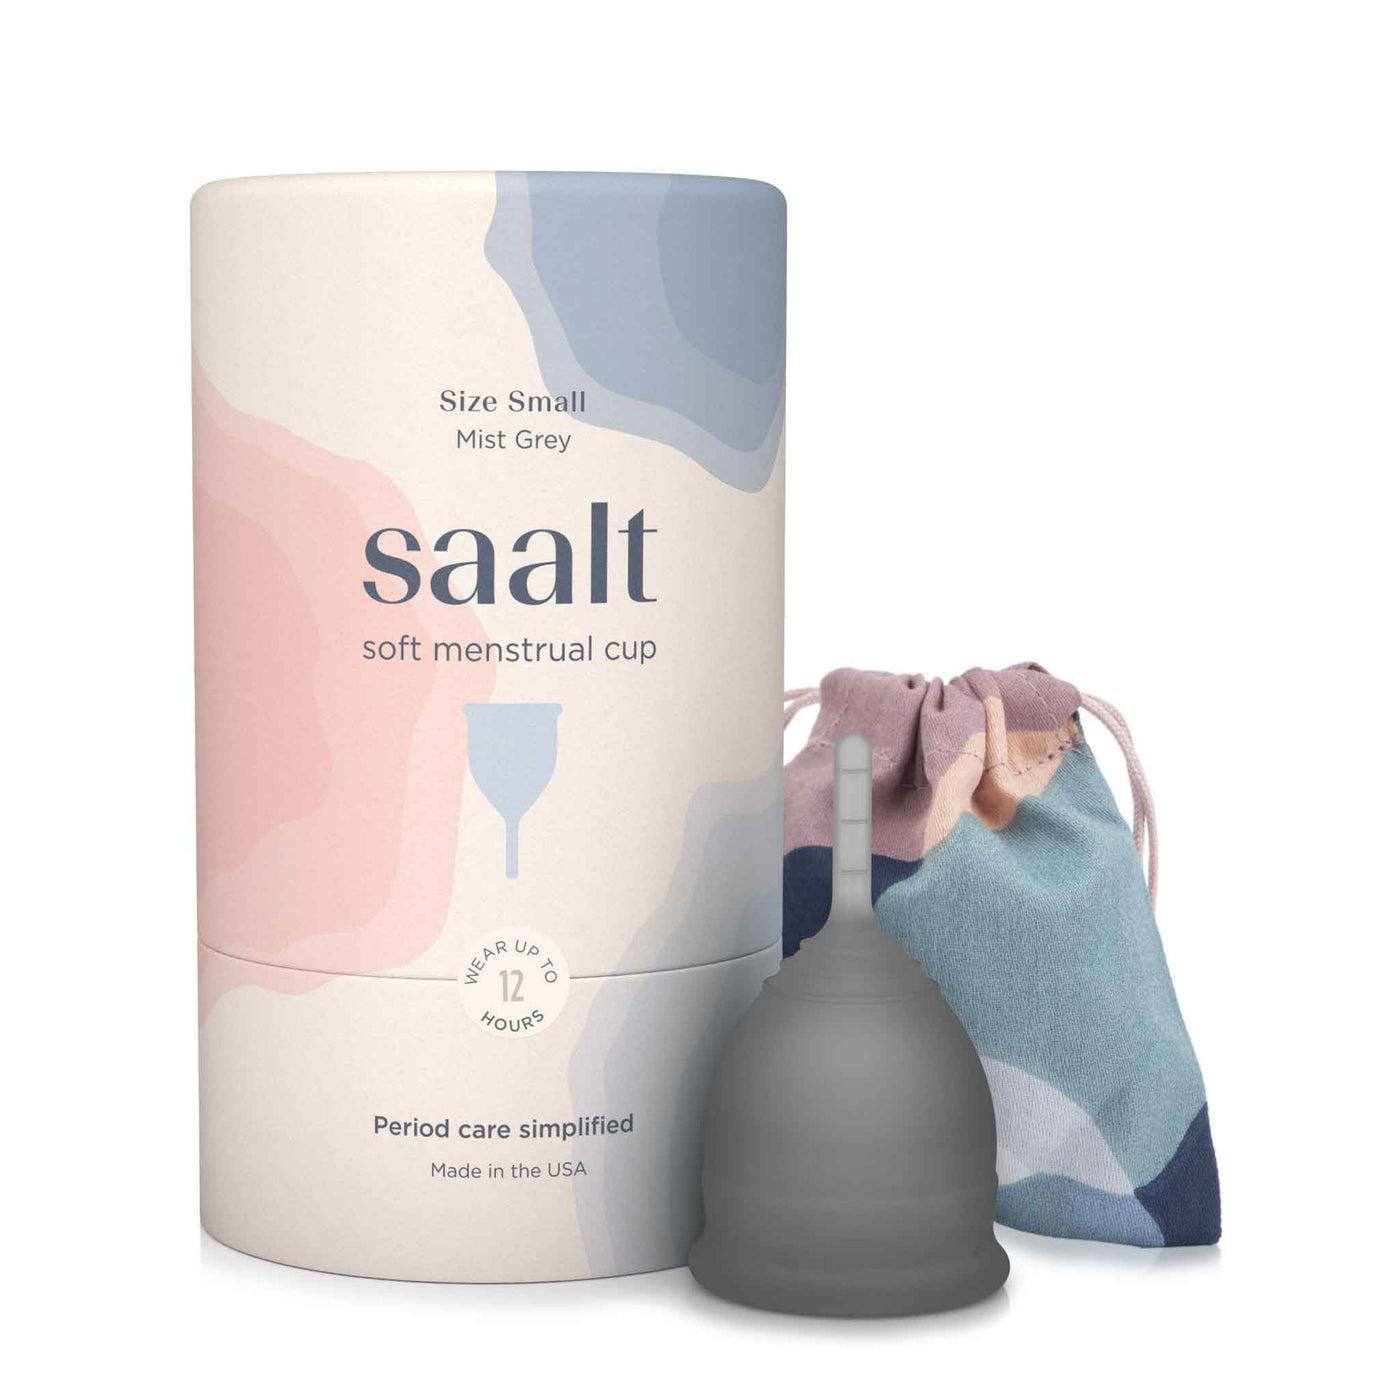 Saalt Soft Menstrual Cup - Size Small